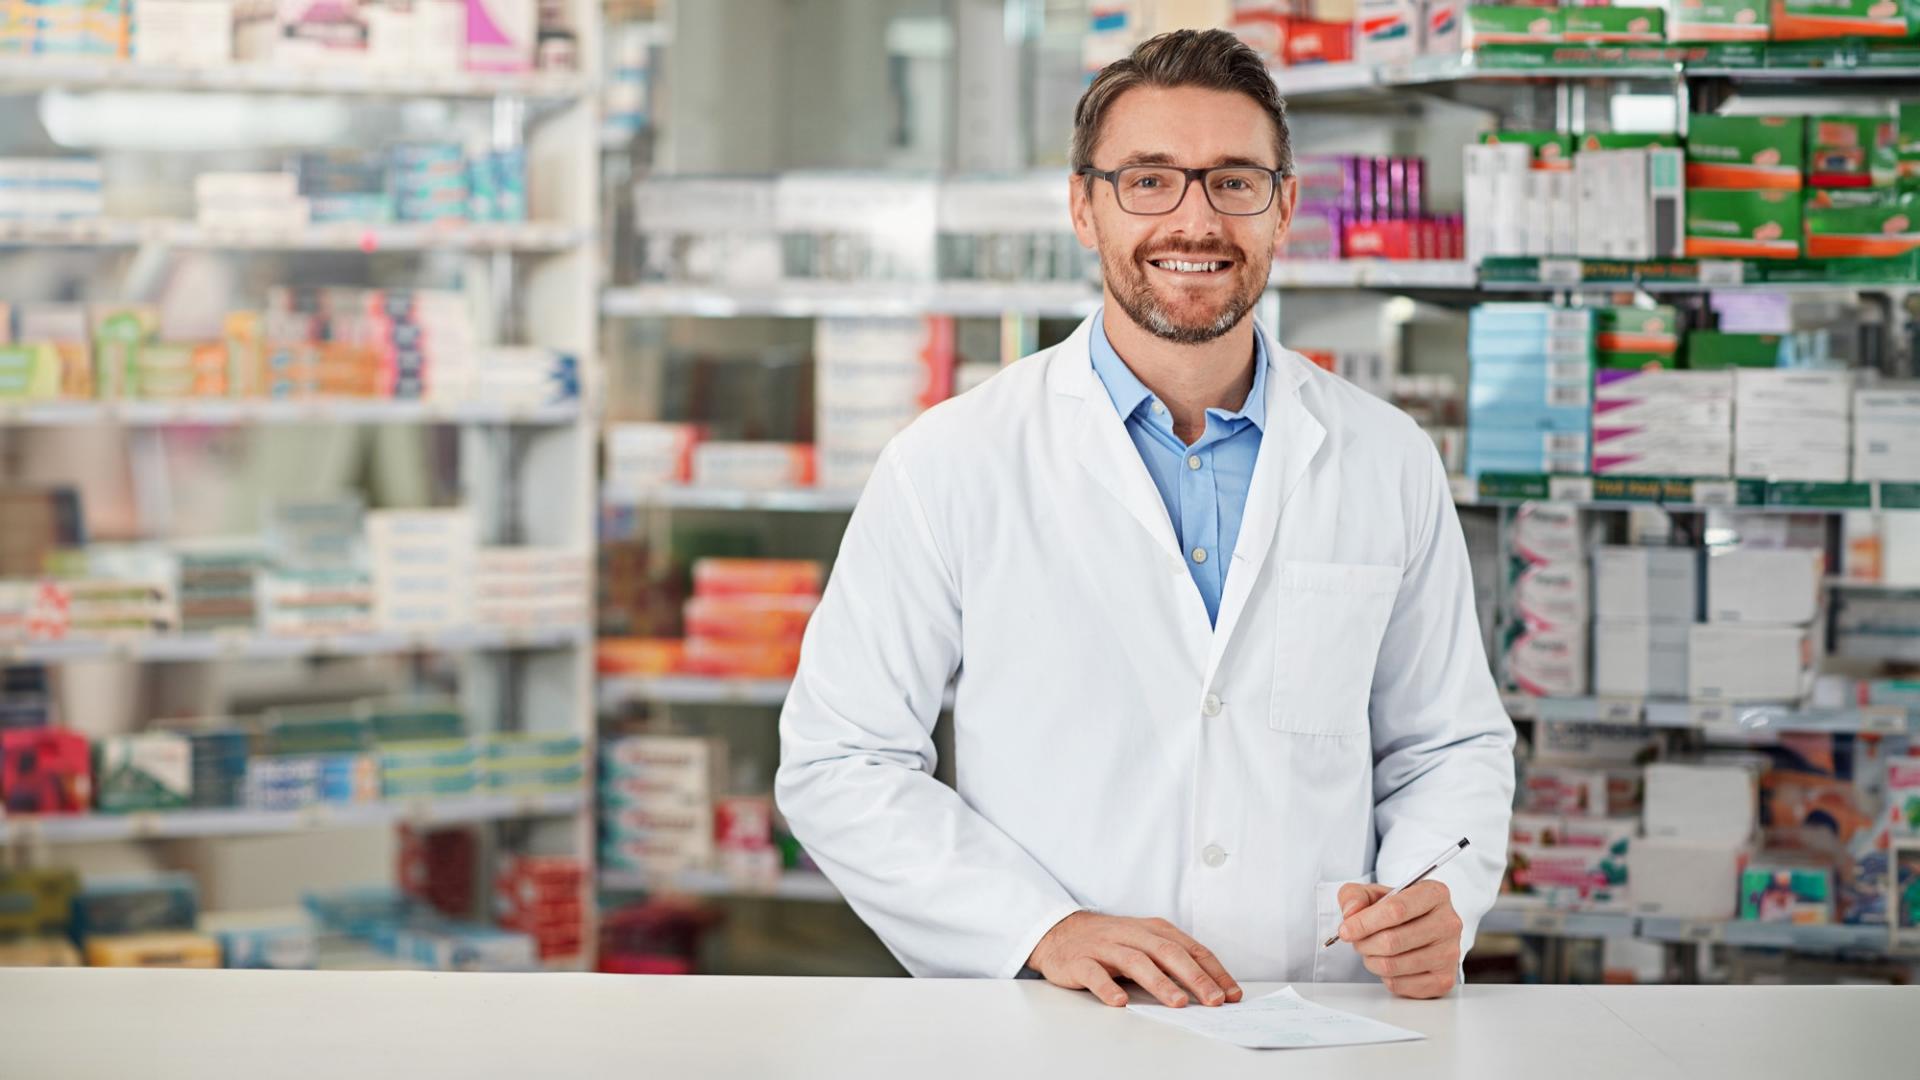 Ein Mann mit weißem Kittel steht hinter einem Thresen – im Hintergrund ist ein Regal mit Medikamenten